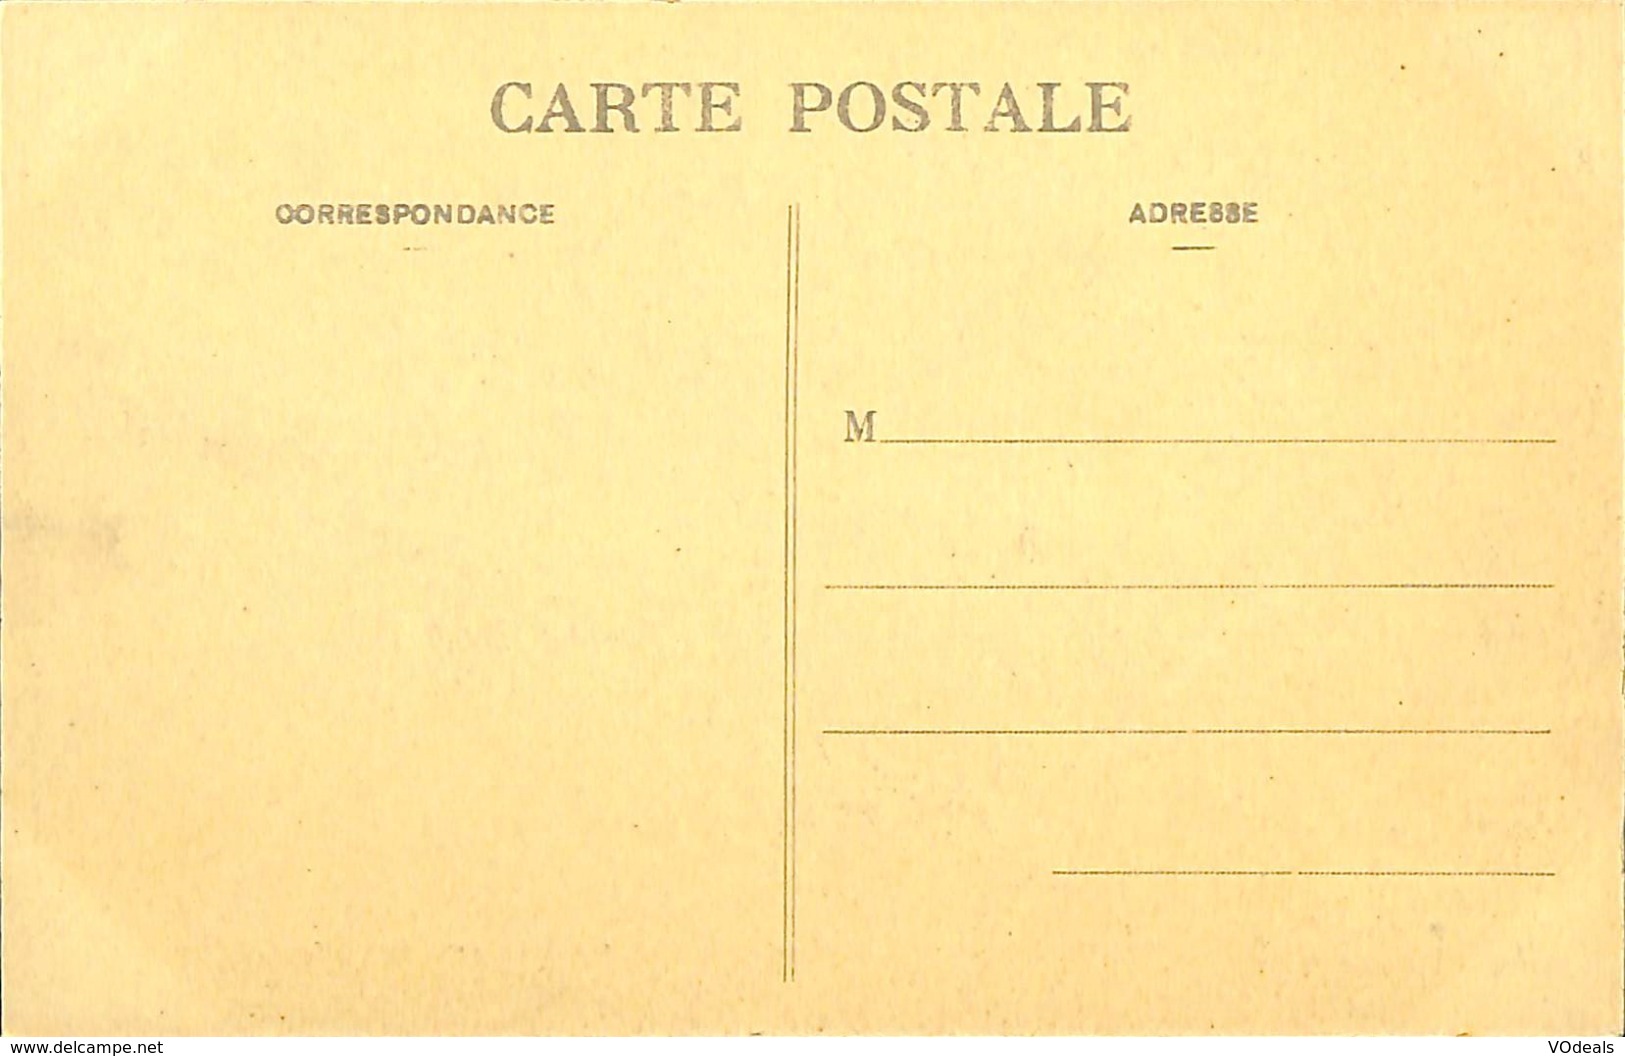 CPA - France - Lot de 10 cartes postales - Lot 05